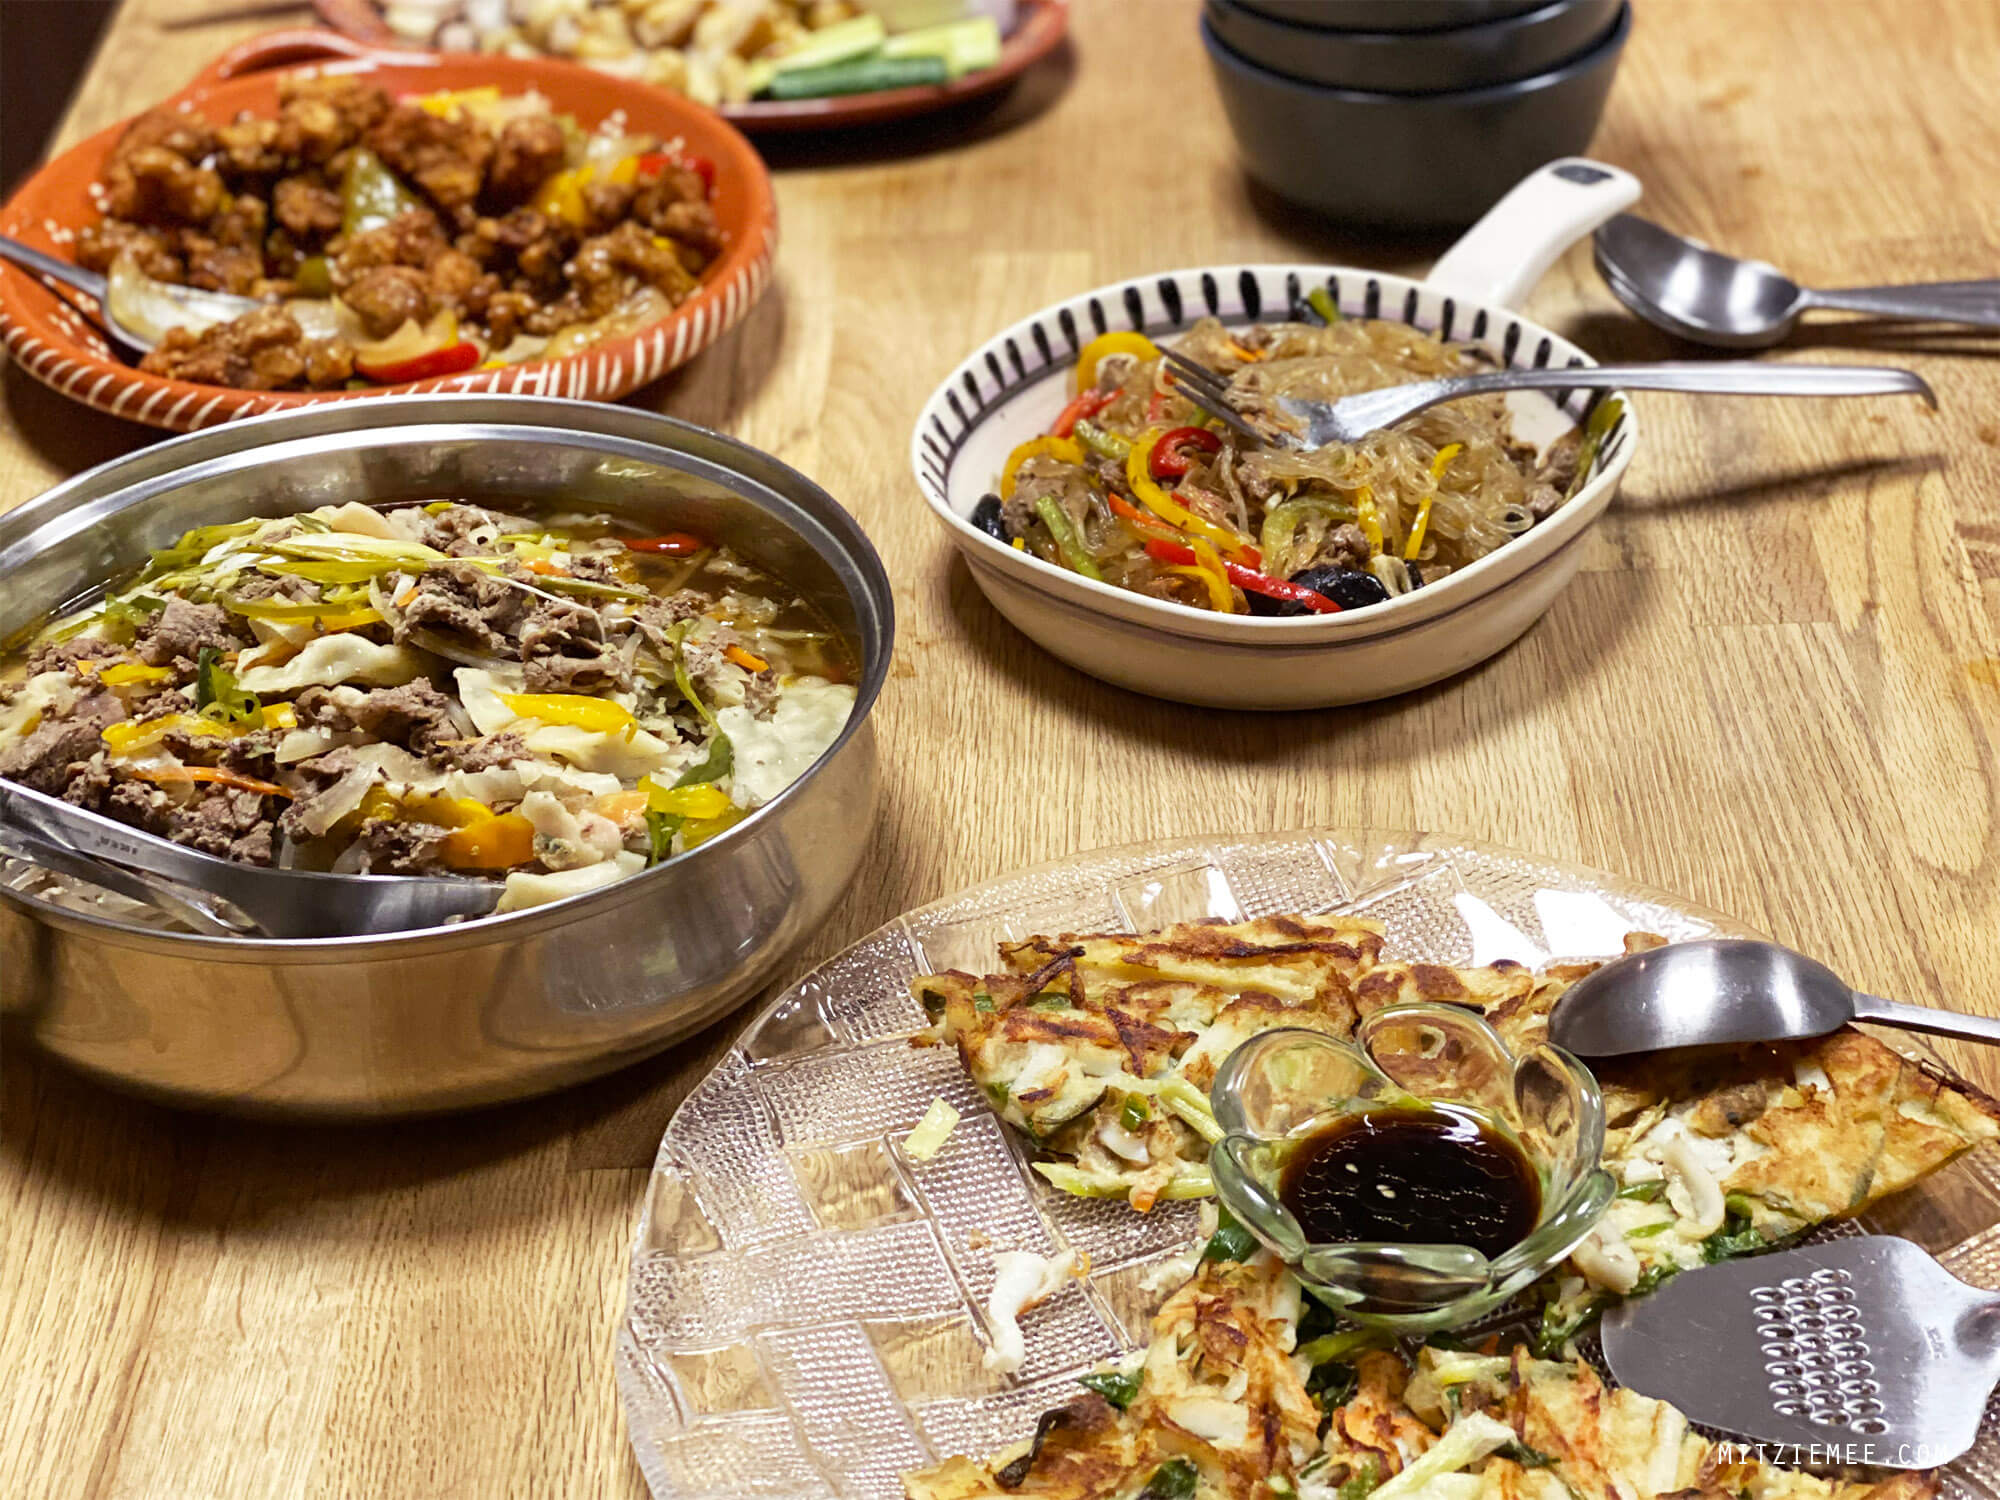 Korean dinner, take-out from Gangnam, Dubai